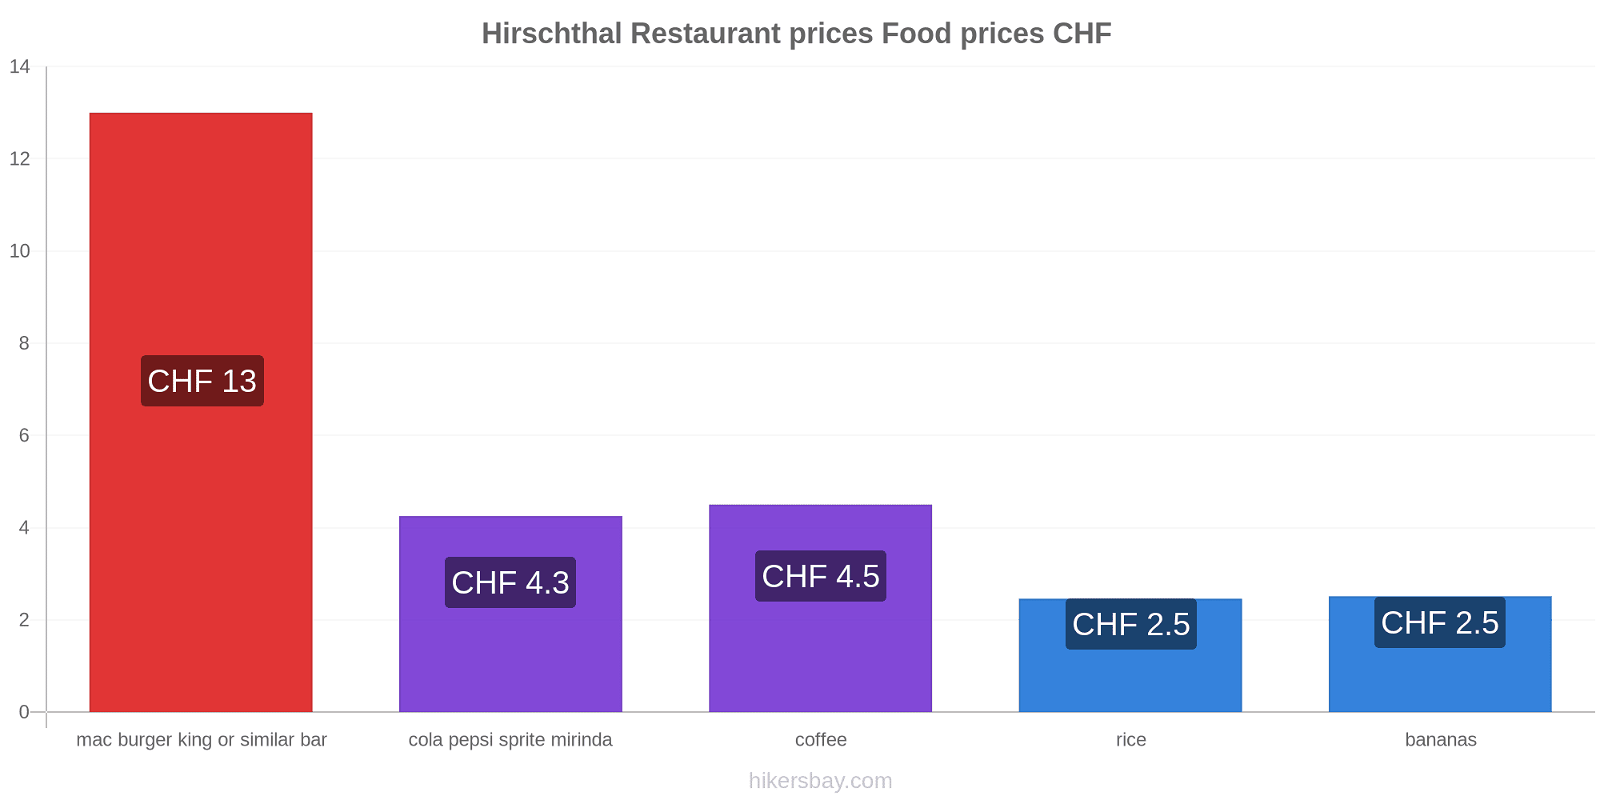 Hirschthal price changes hikersbay.com